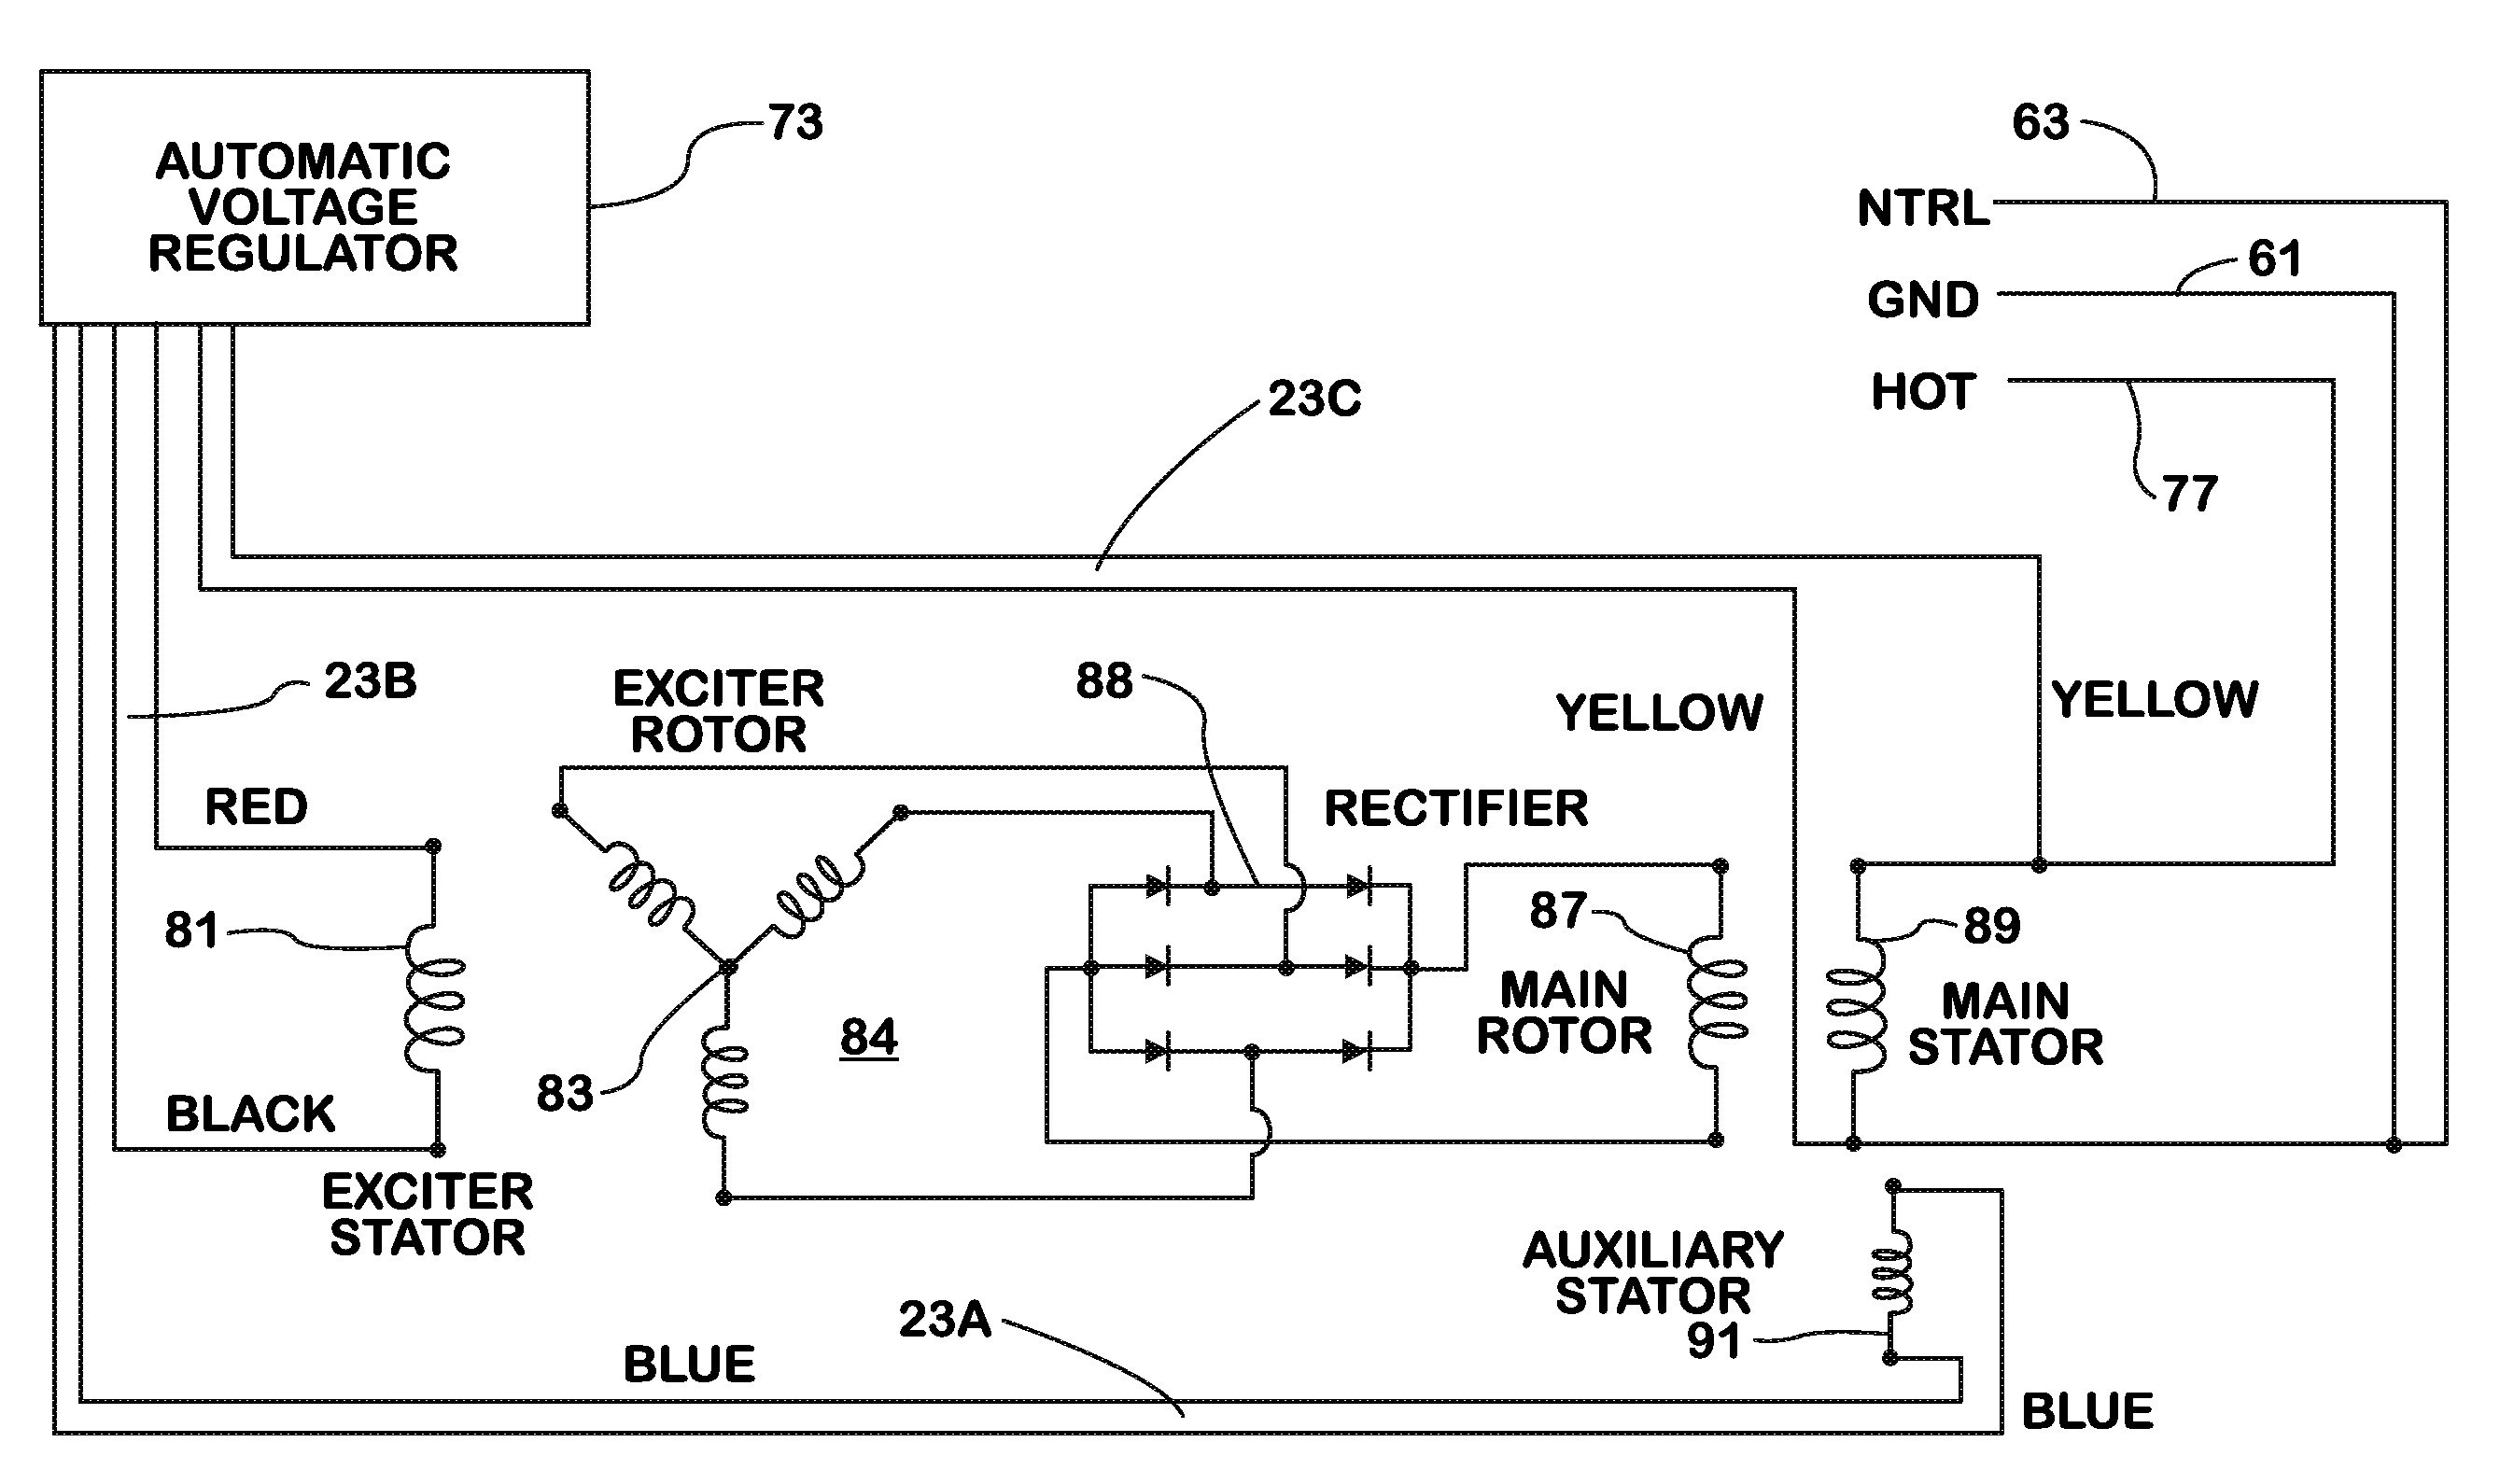 Wiring Diagram Alternator Voltage Regulator Best Lucas Voltage Regulator Wiring Diagram Dolgular New Wiring Diagram Alternator Voltage Regulator New